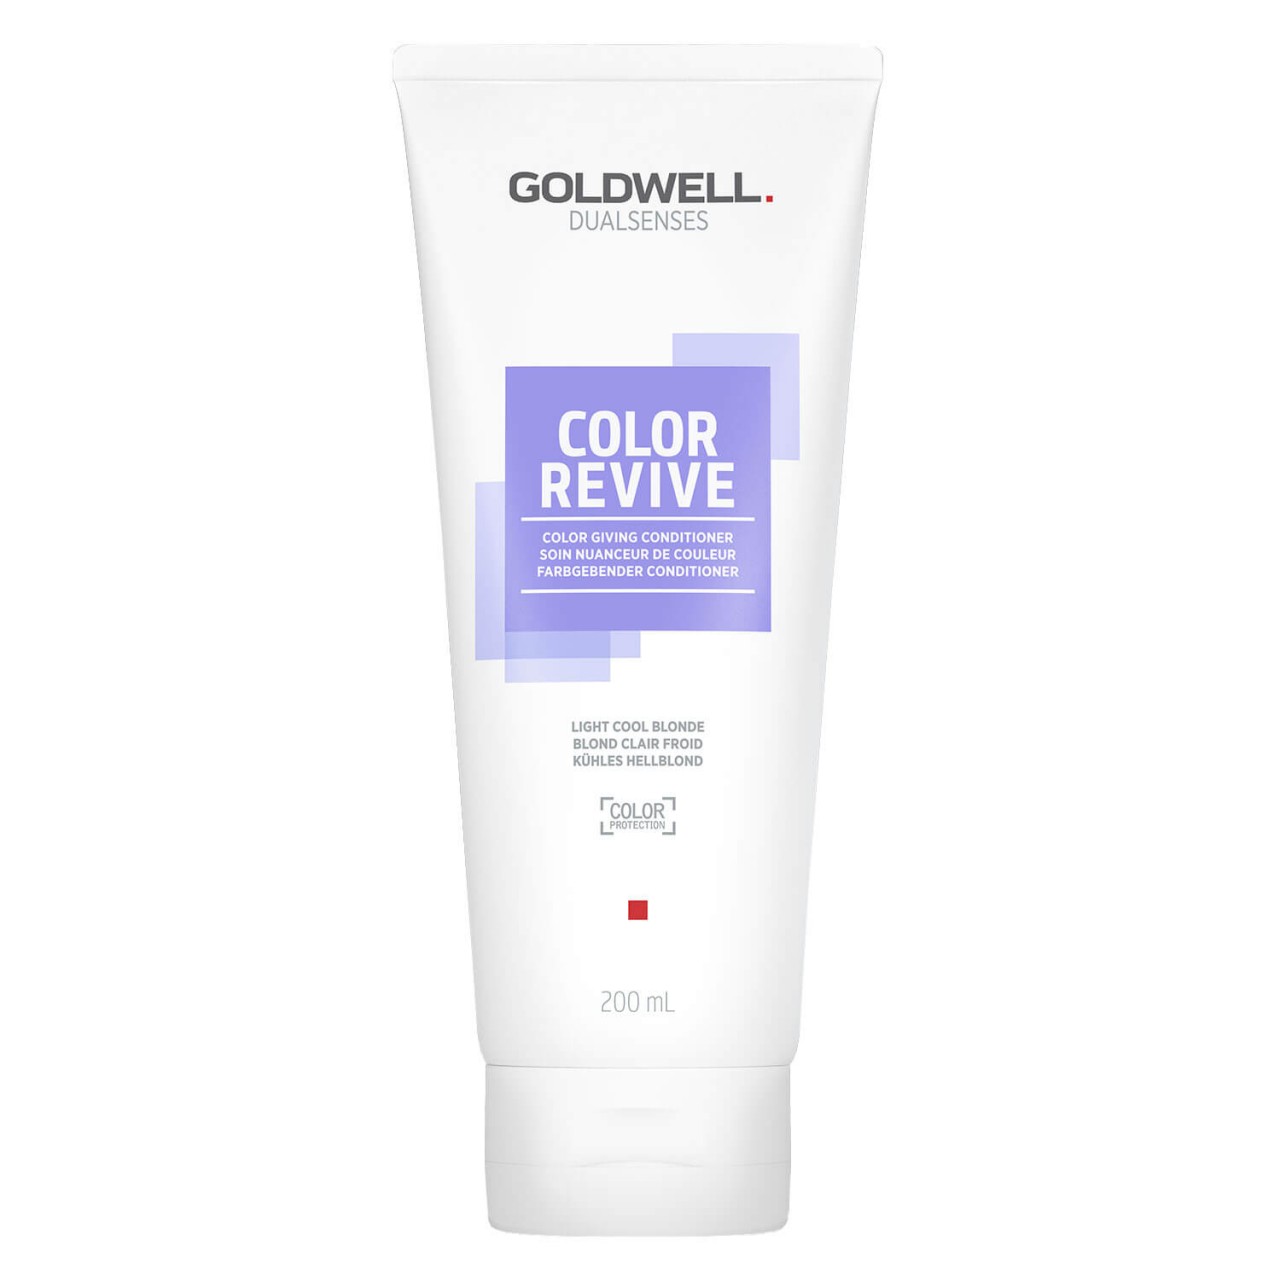 Dualsenses Color Revive - Color Conditioner Light Cool Blonde von Goldwell